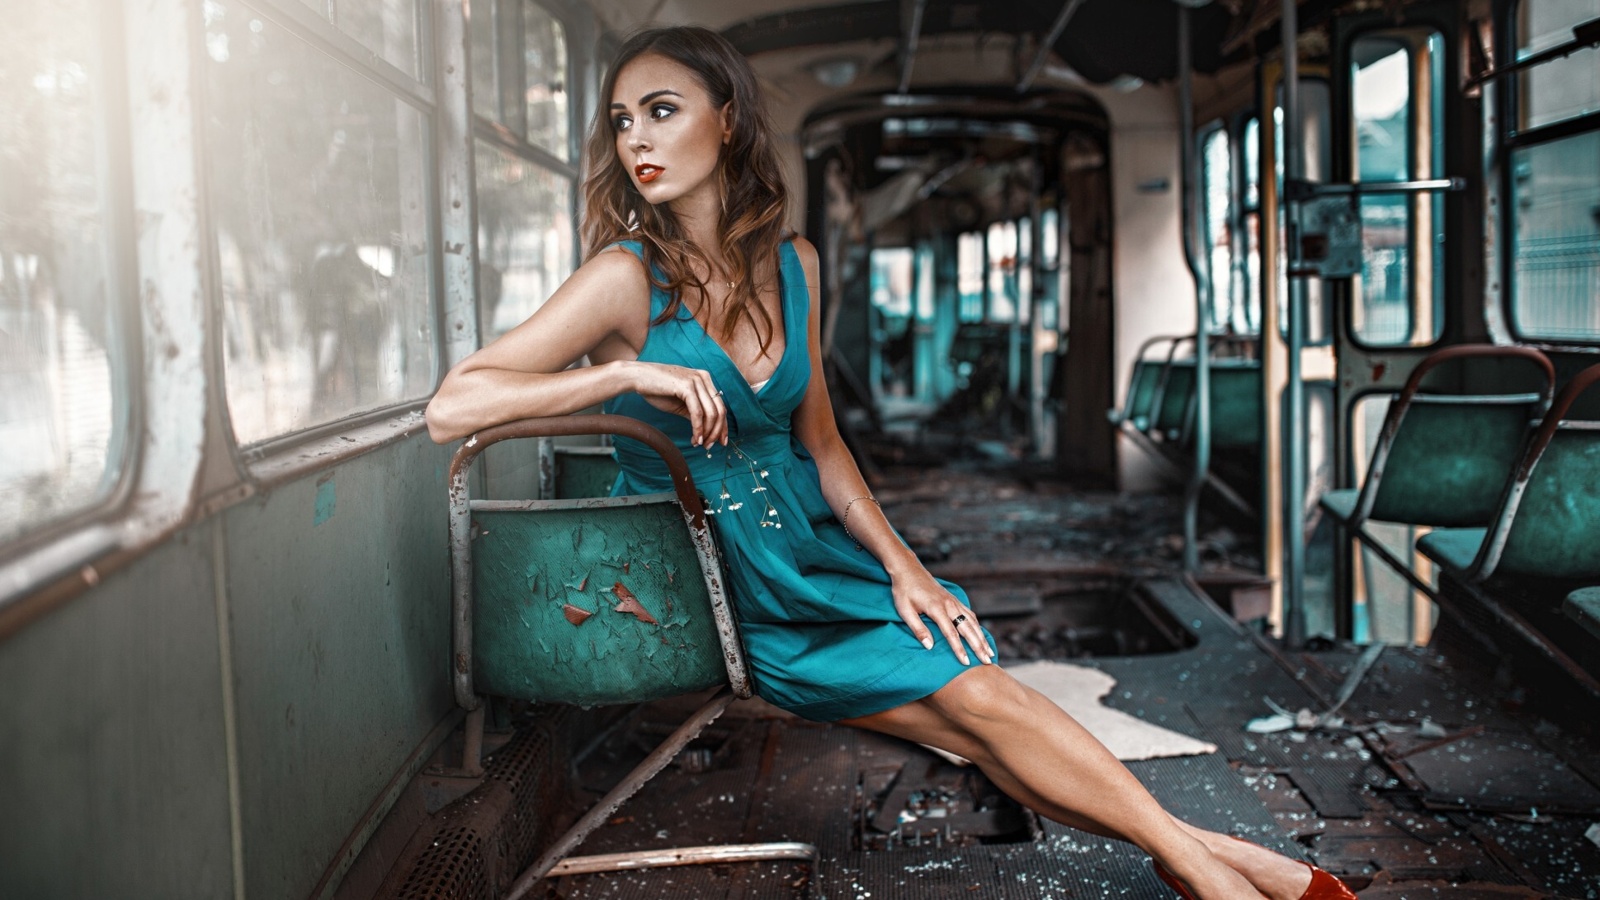 Обои Girl in abandoned train 1600x900